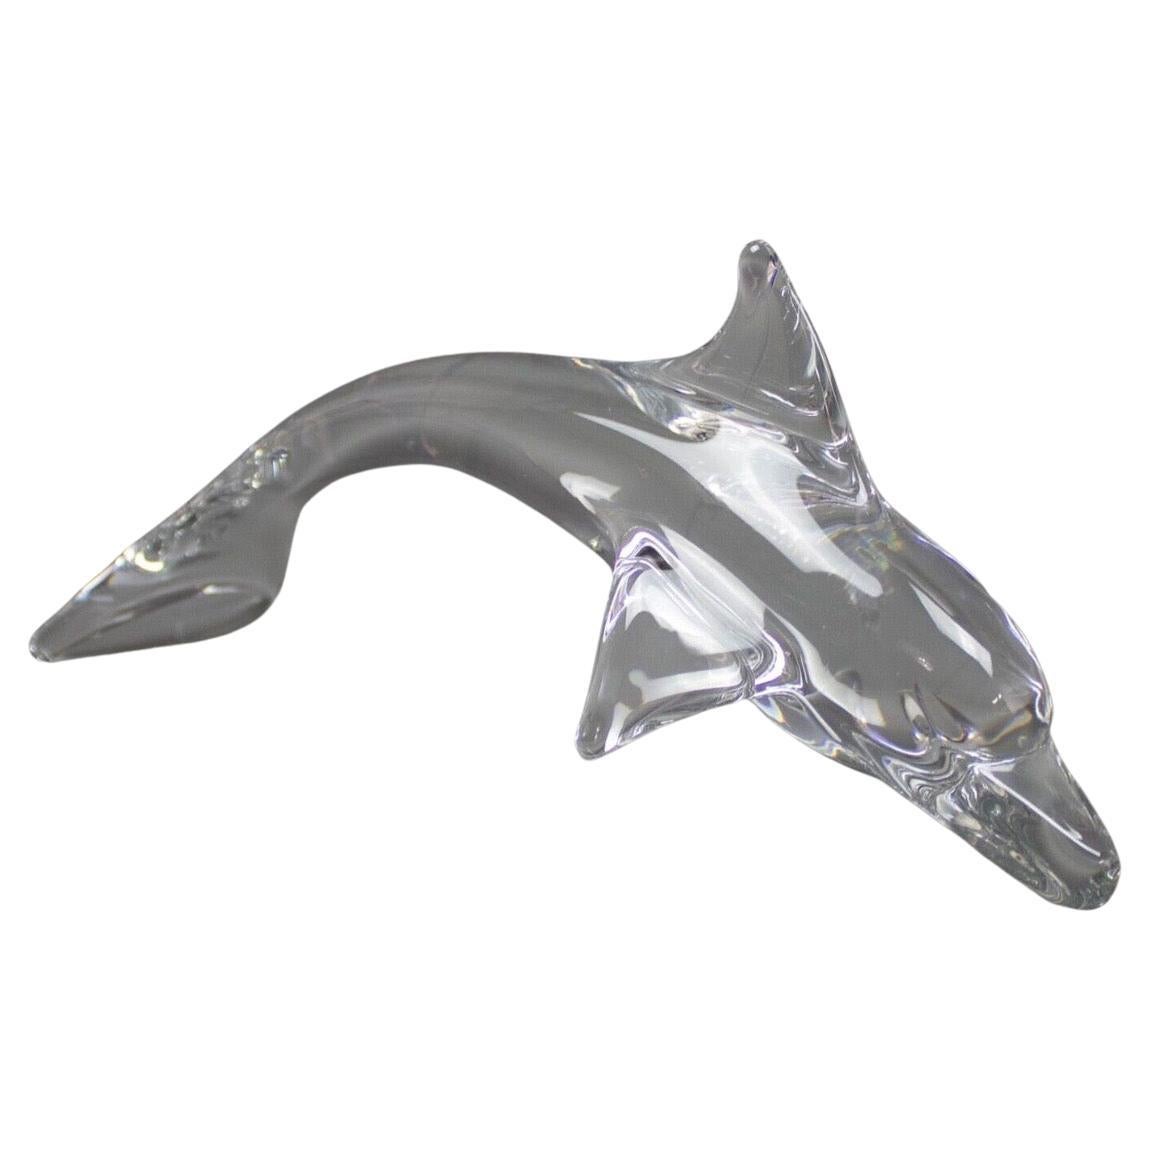 Magnifique sculpture de dauphin en verre d'art en cristal clair, réalisée par Daum en France, vers les années 1980. La pièce est en très bon état, sans éclats ni fissures, et mesure 13 